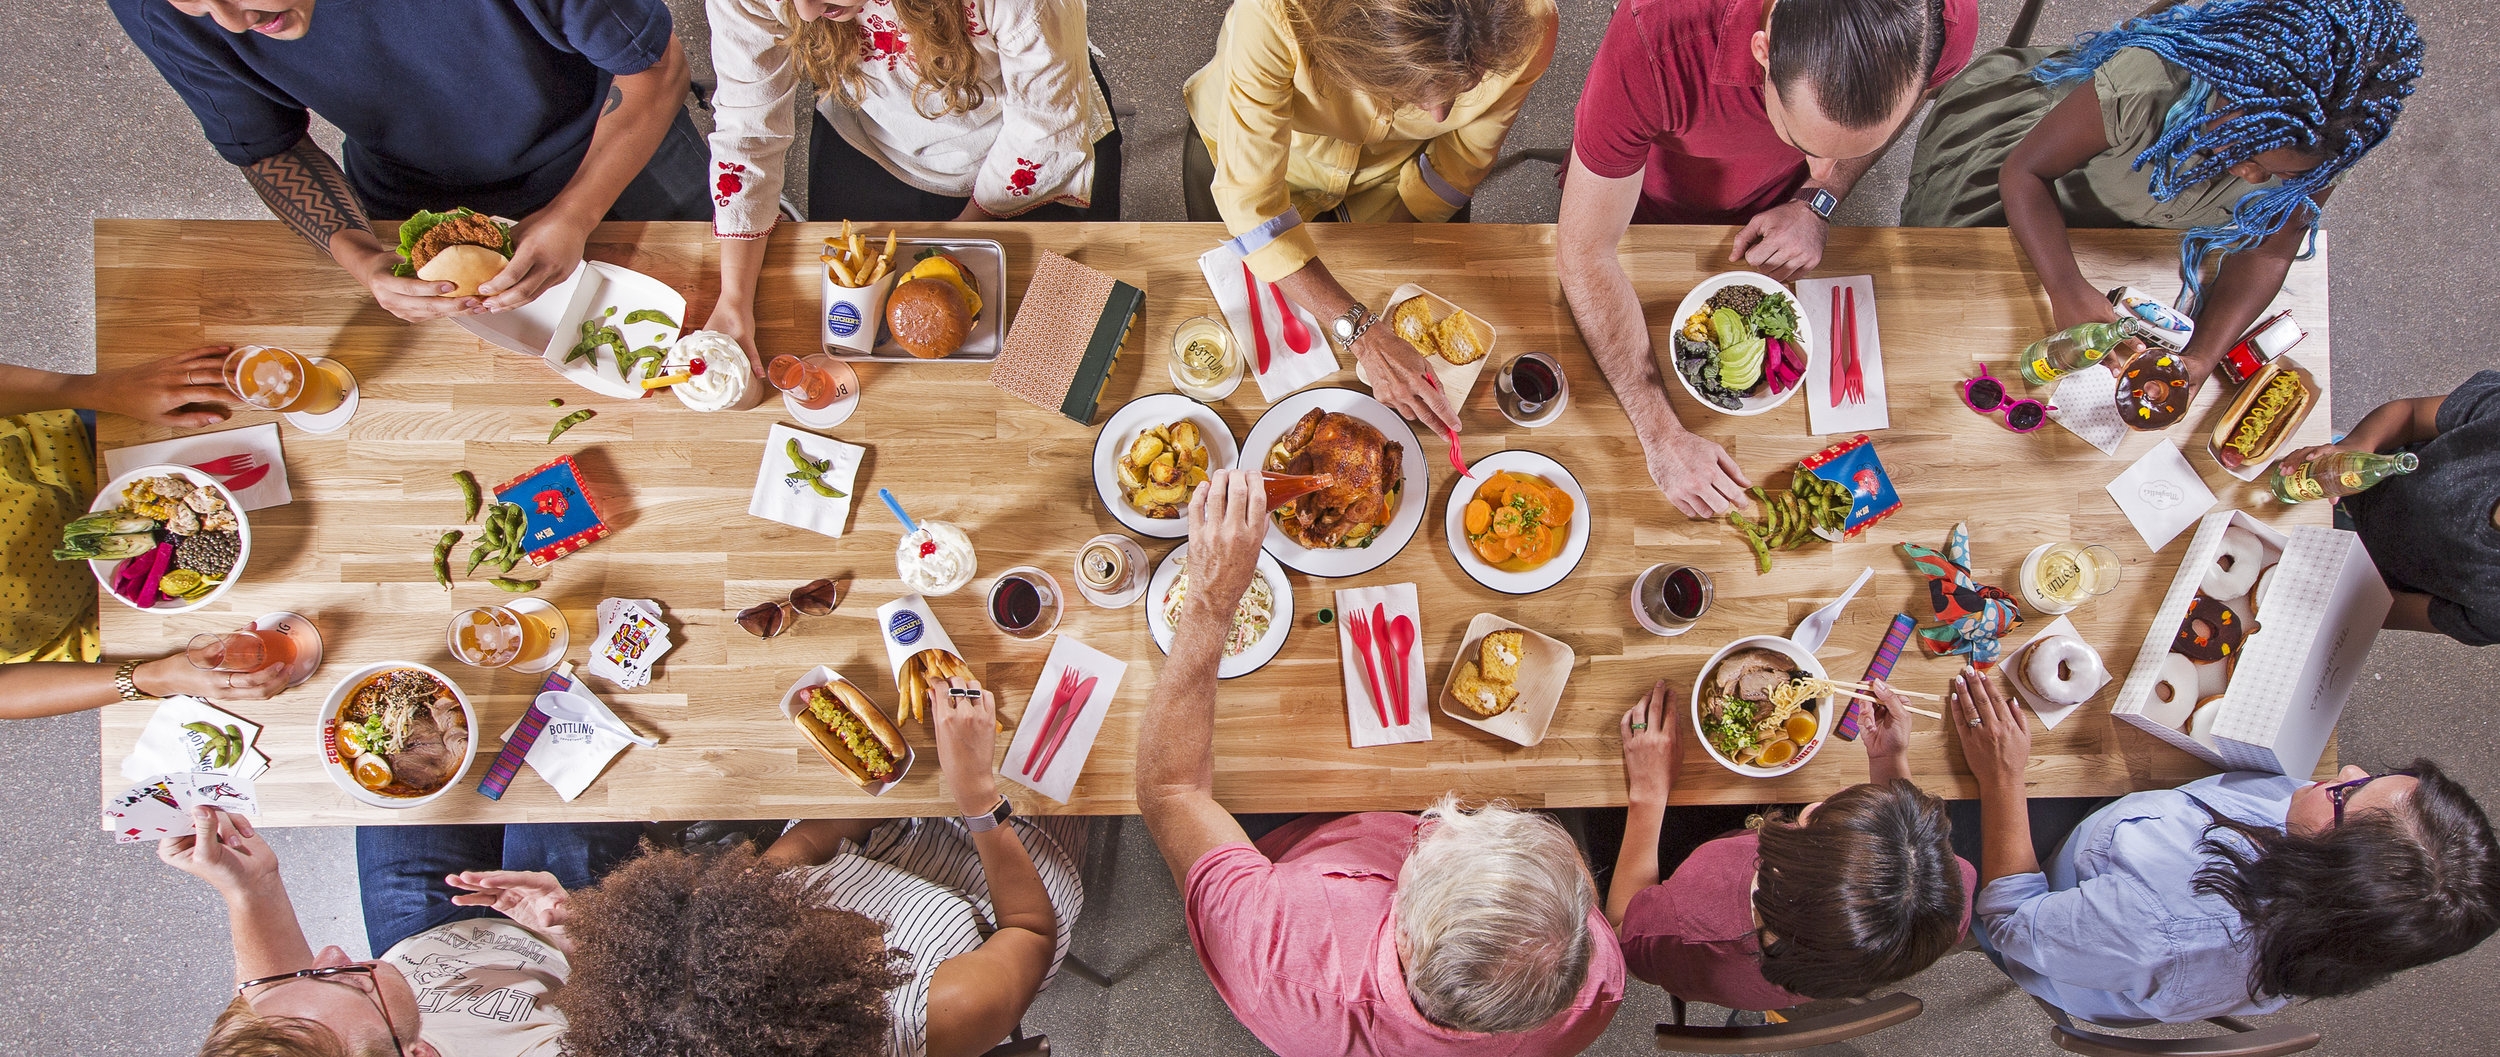 austin-texas-food-photographer-family-style-dinner-table